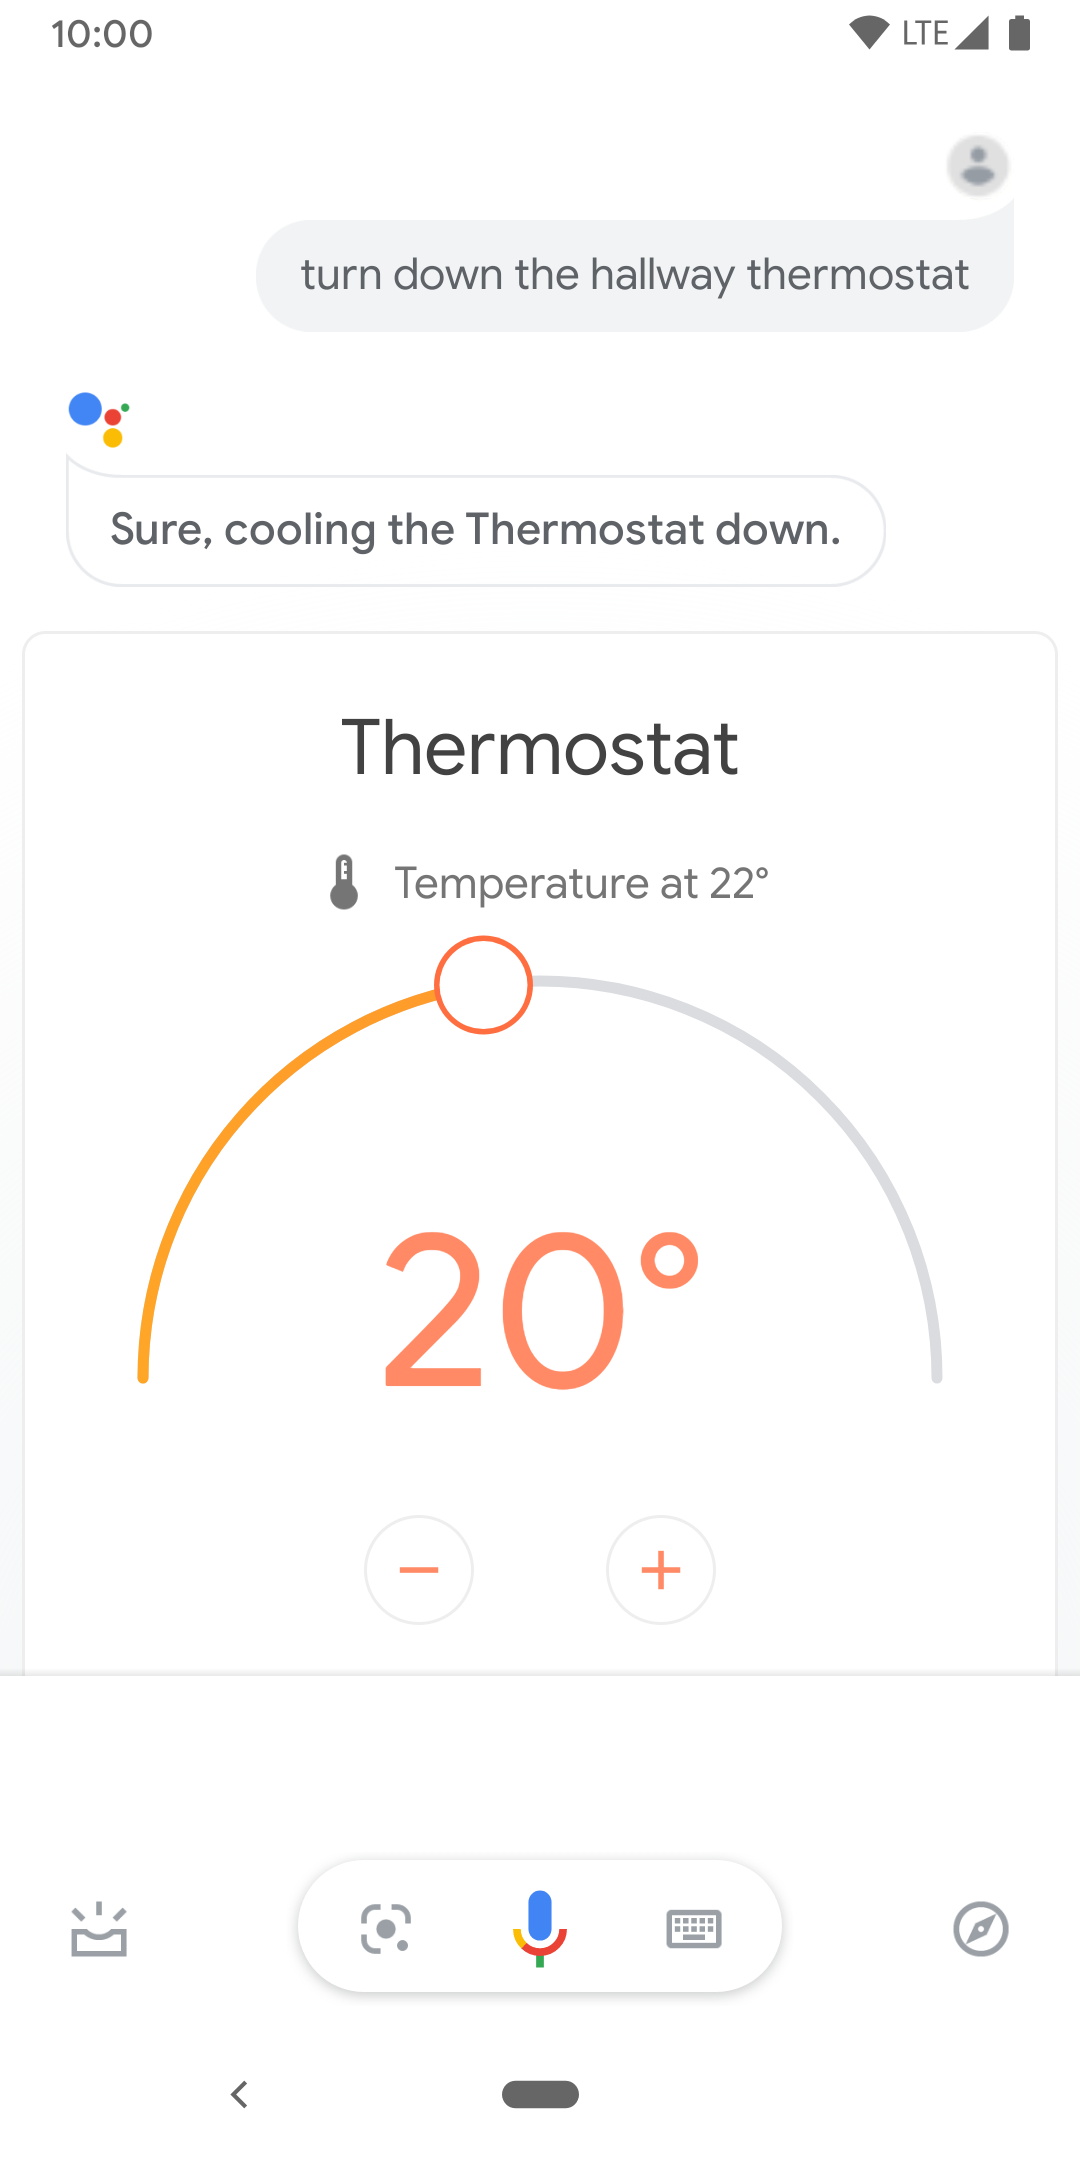 Bu resimde, koridordaki termostatın sıcaklığını kontrol etmek için kullanılan dokunma kontrolleri gösterilmektedir.